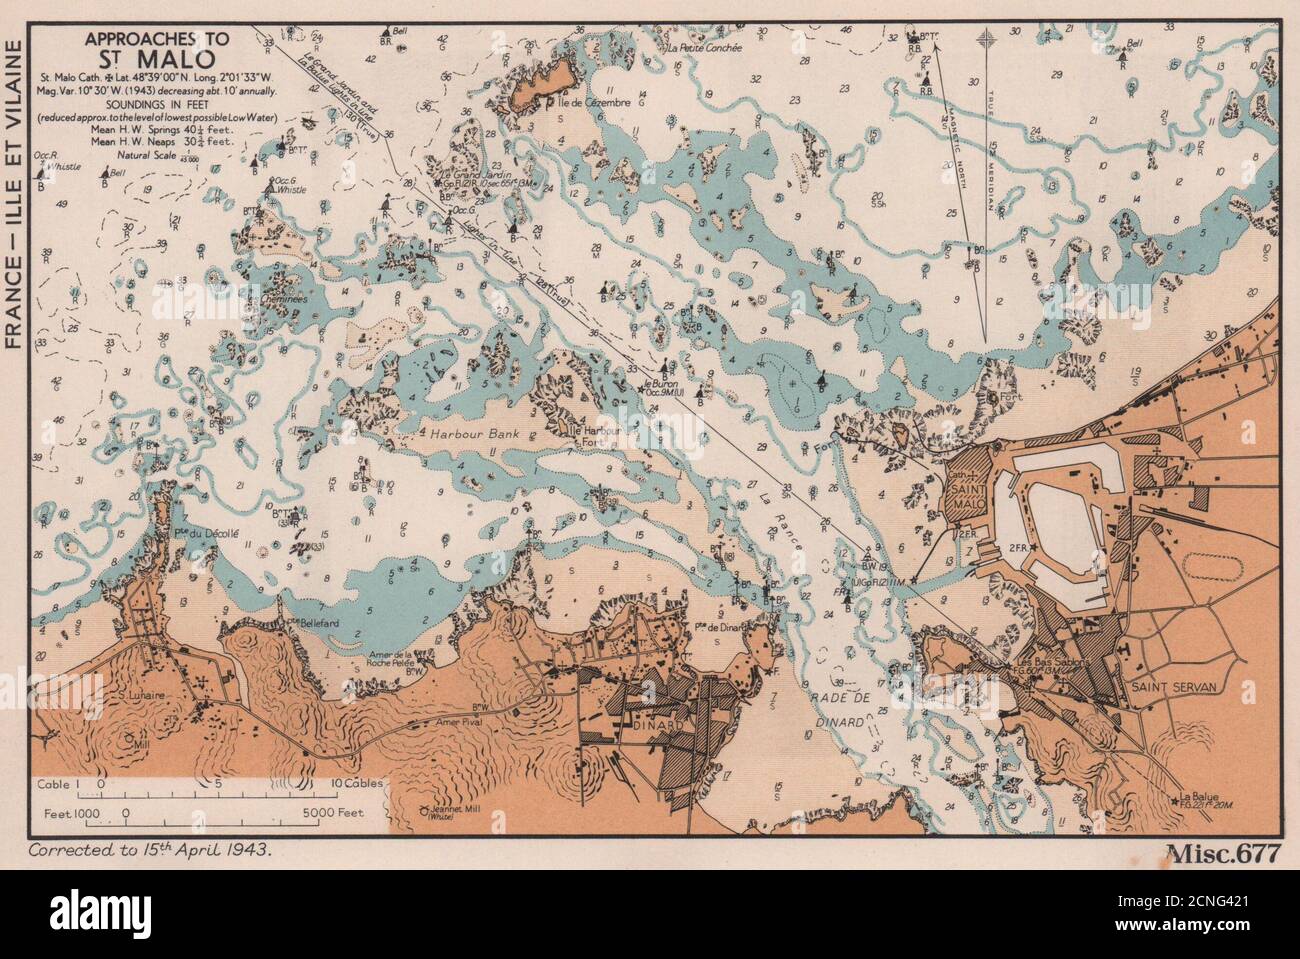 St Malo/Servan Dinard si avvicina alla costa. Mappa di pianificazione D-Day. AMMIRAGLIATO 1943 Foto Stock